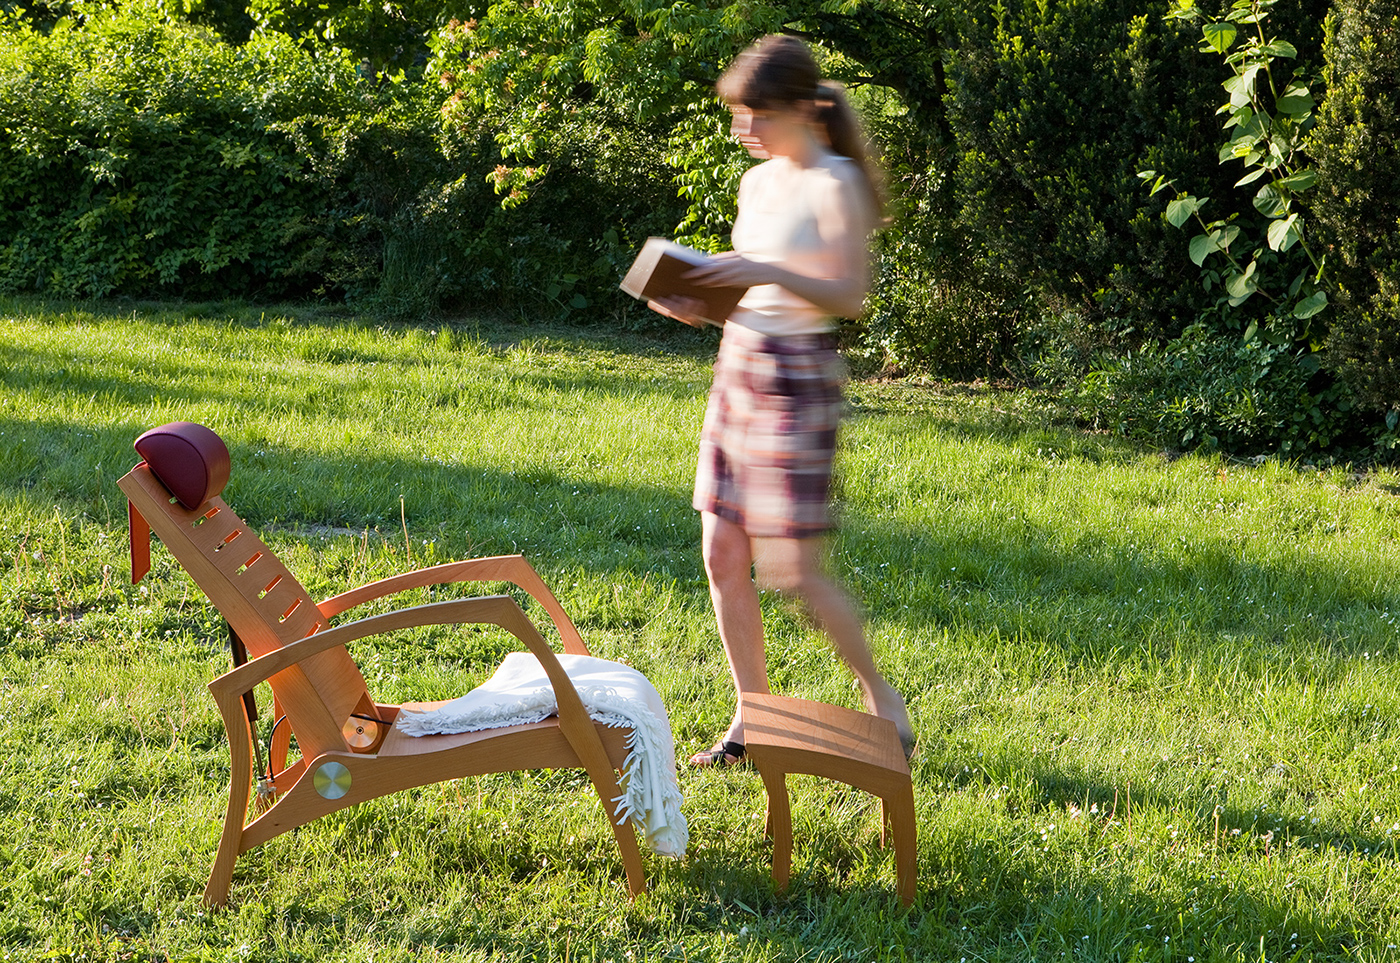 relax chair recliner liège Grasshopper kabóca szek chair ergonomic wooden relax furniture